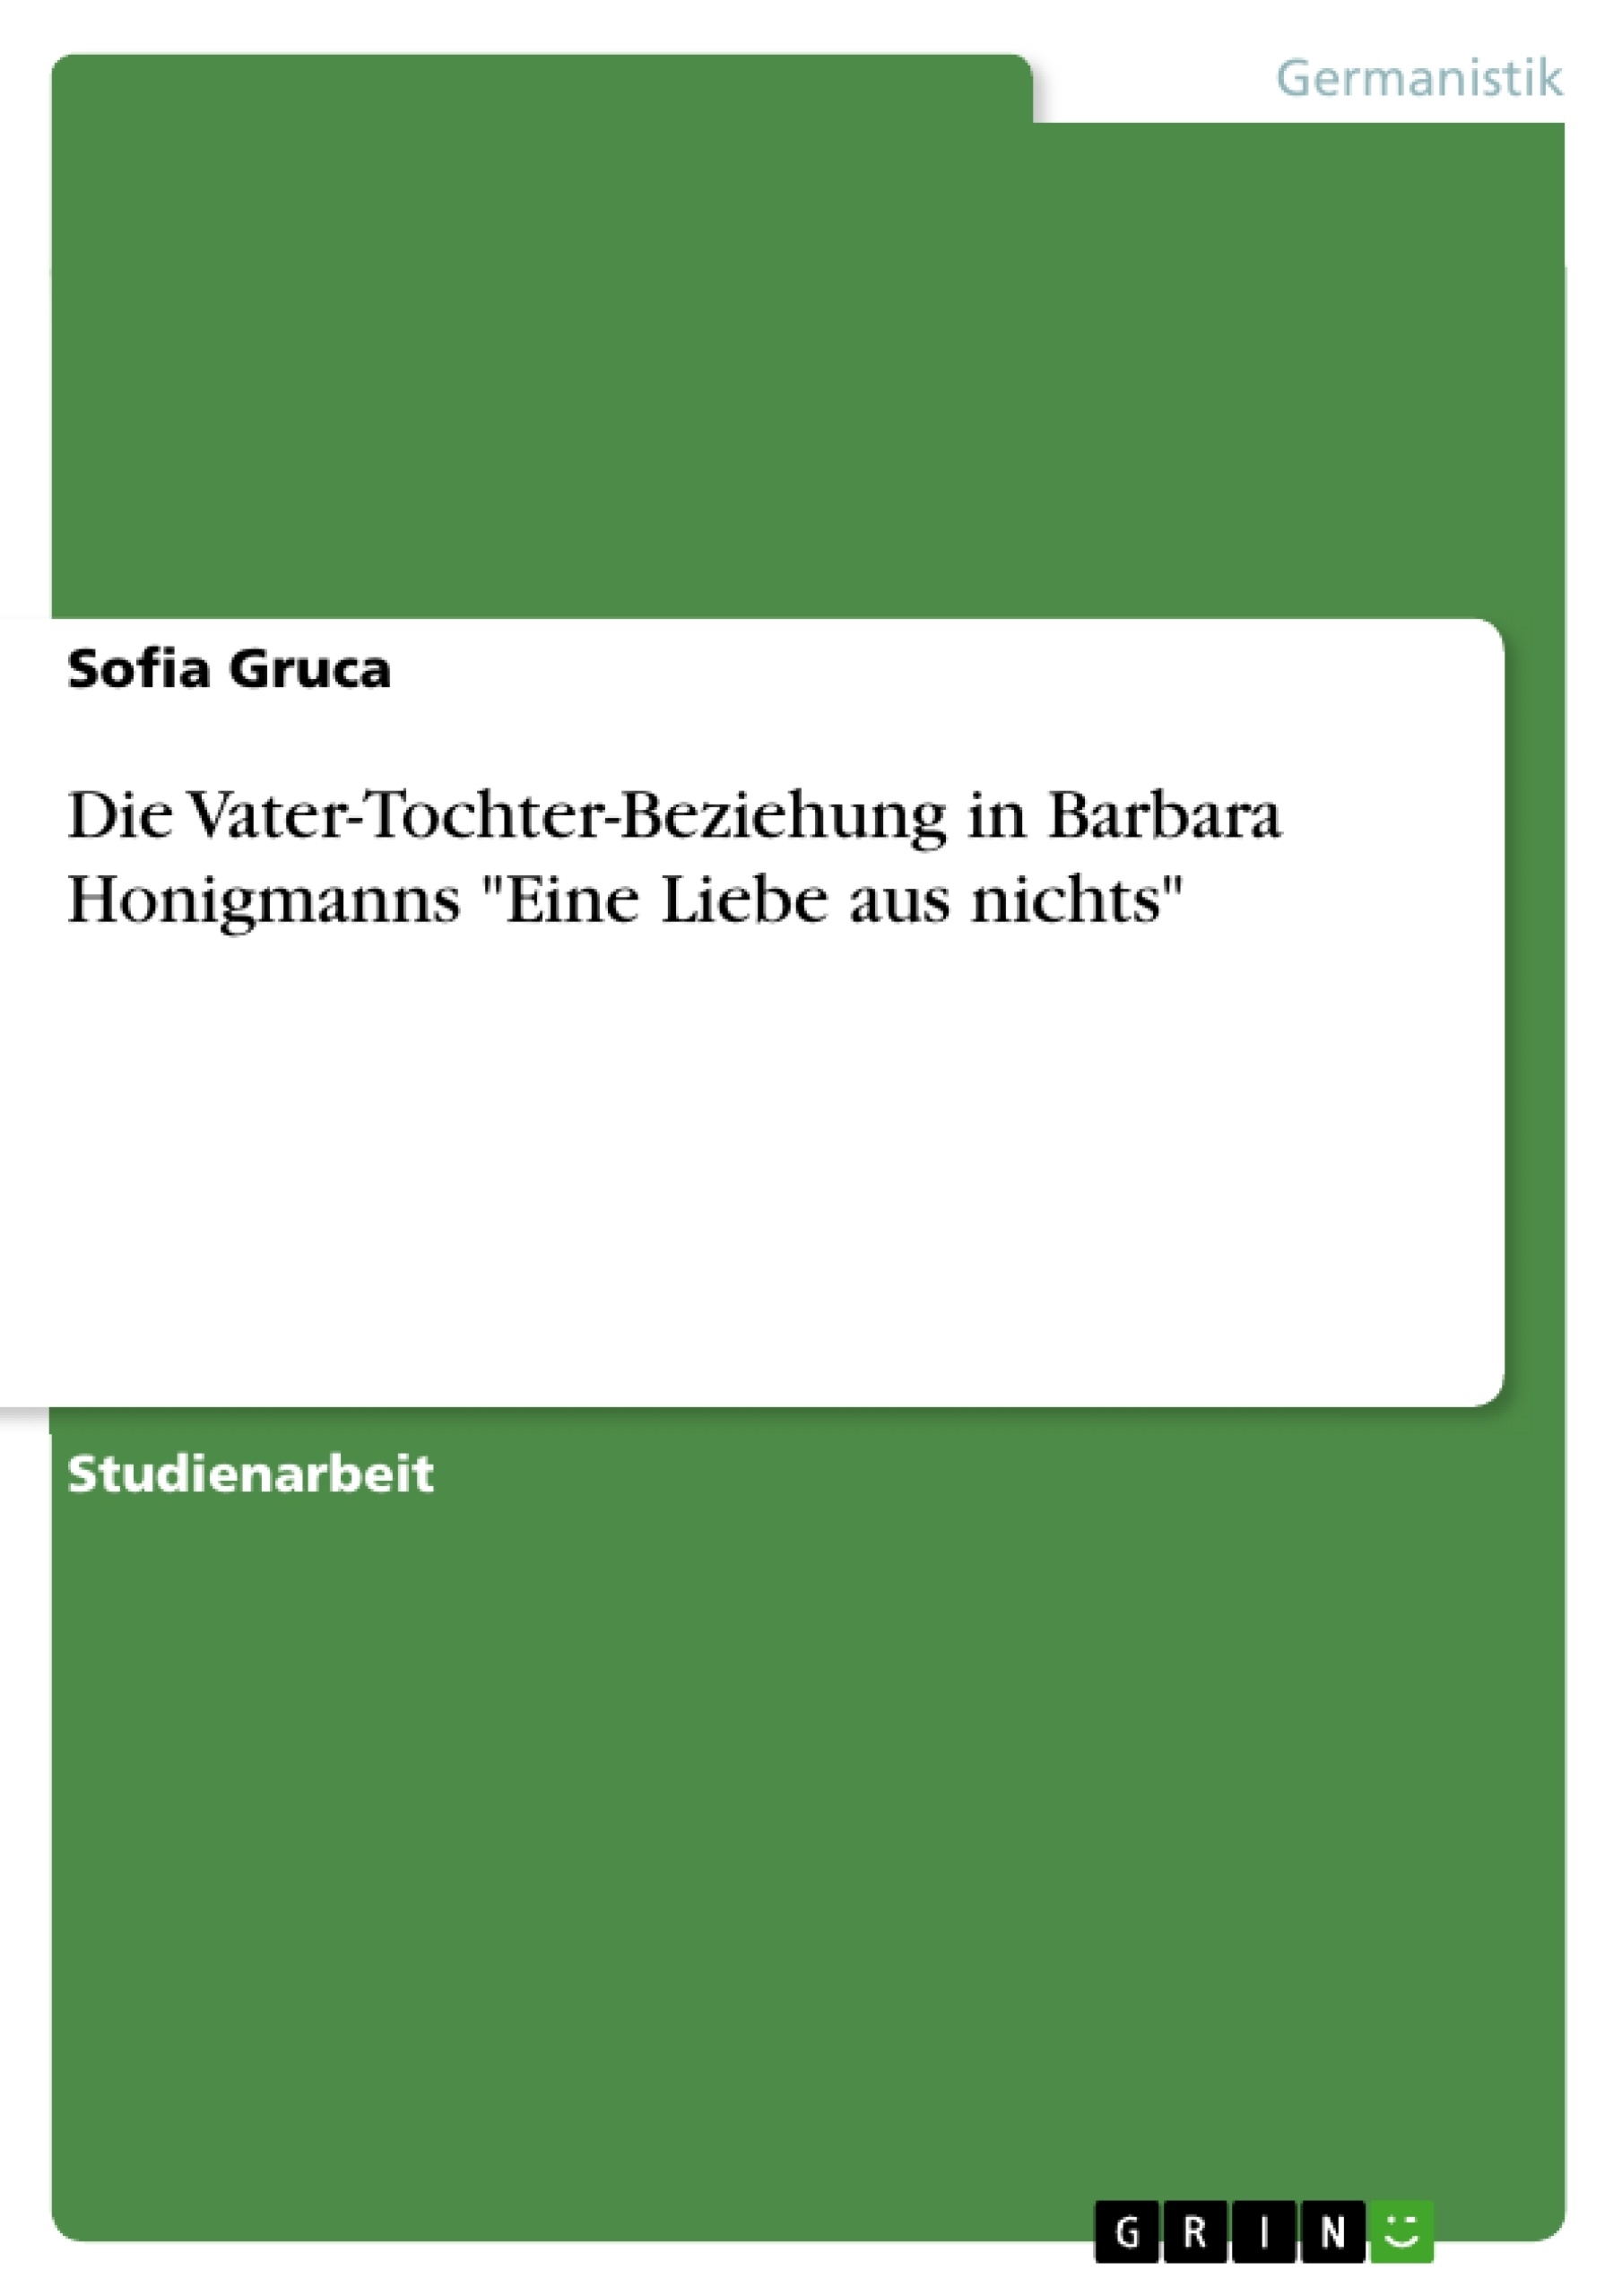 Title: Die Vater-Tochter-Beziehung in Barbara Honigmanns "Eine Liebe aus nichts"